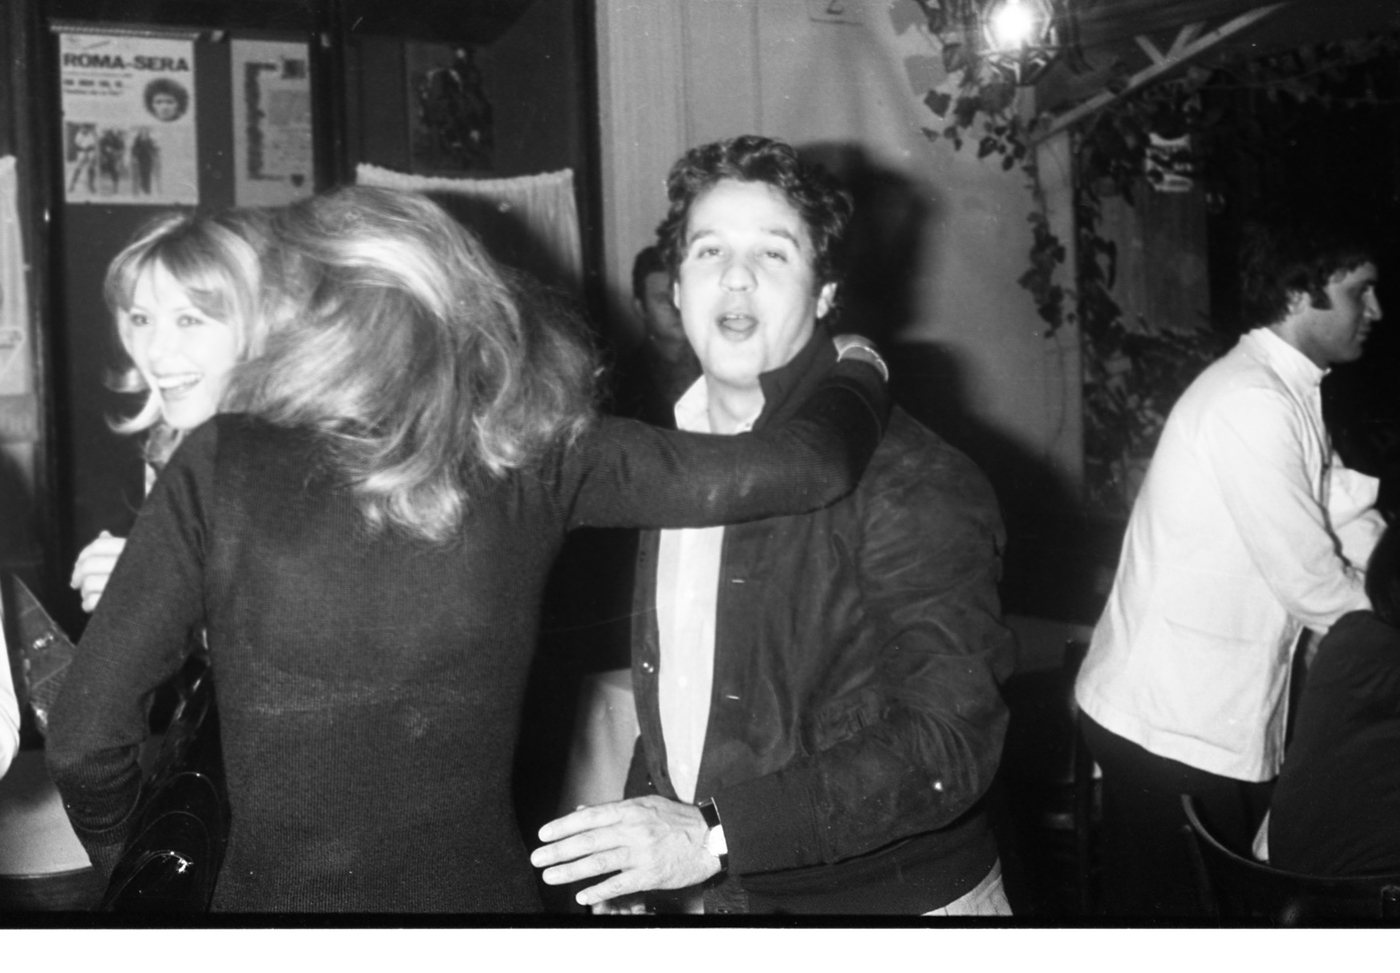 Renato Pozzetto with Ursula Andress in 1975. 